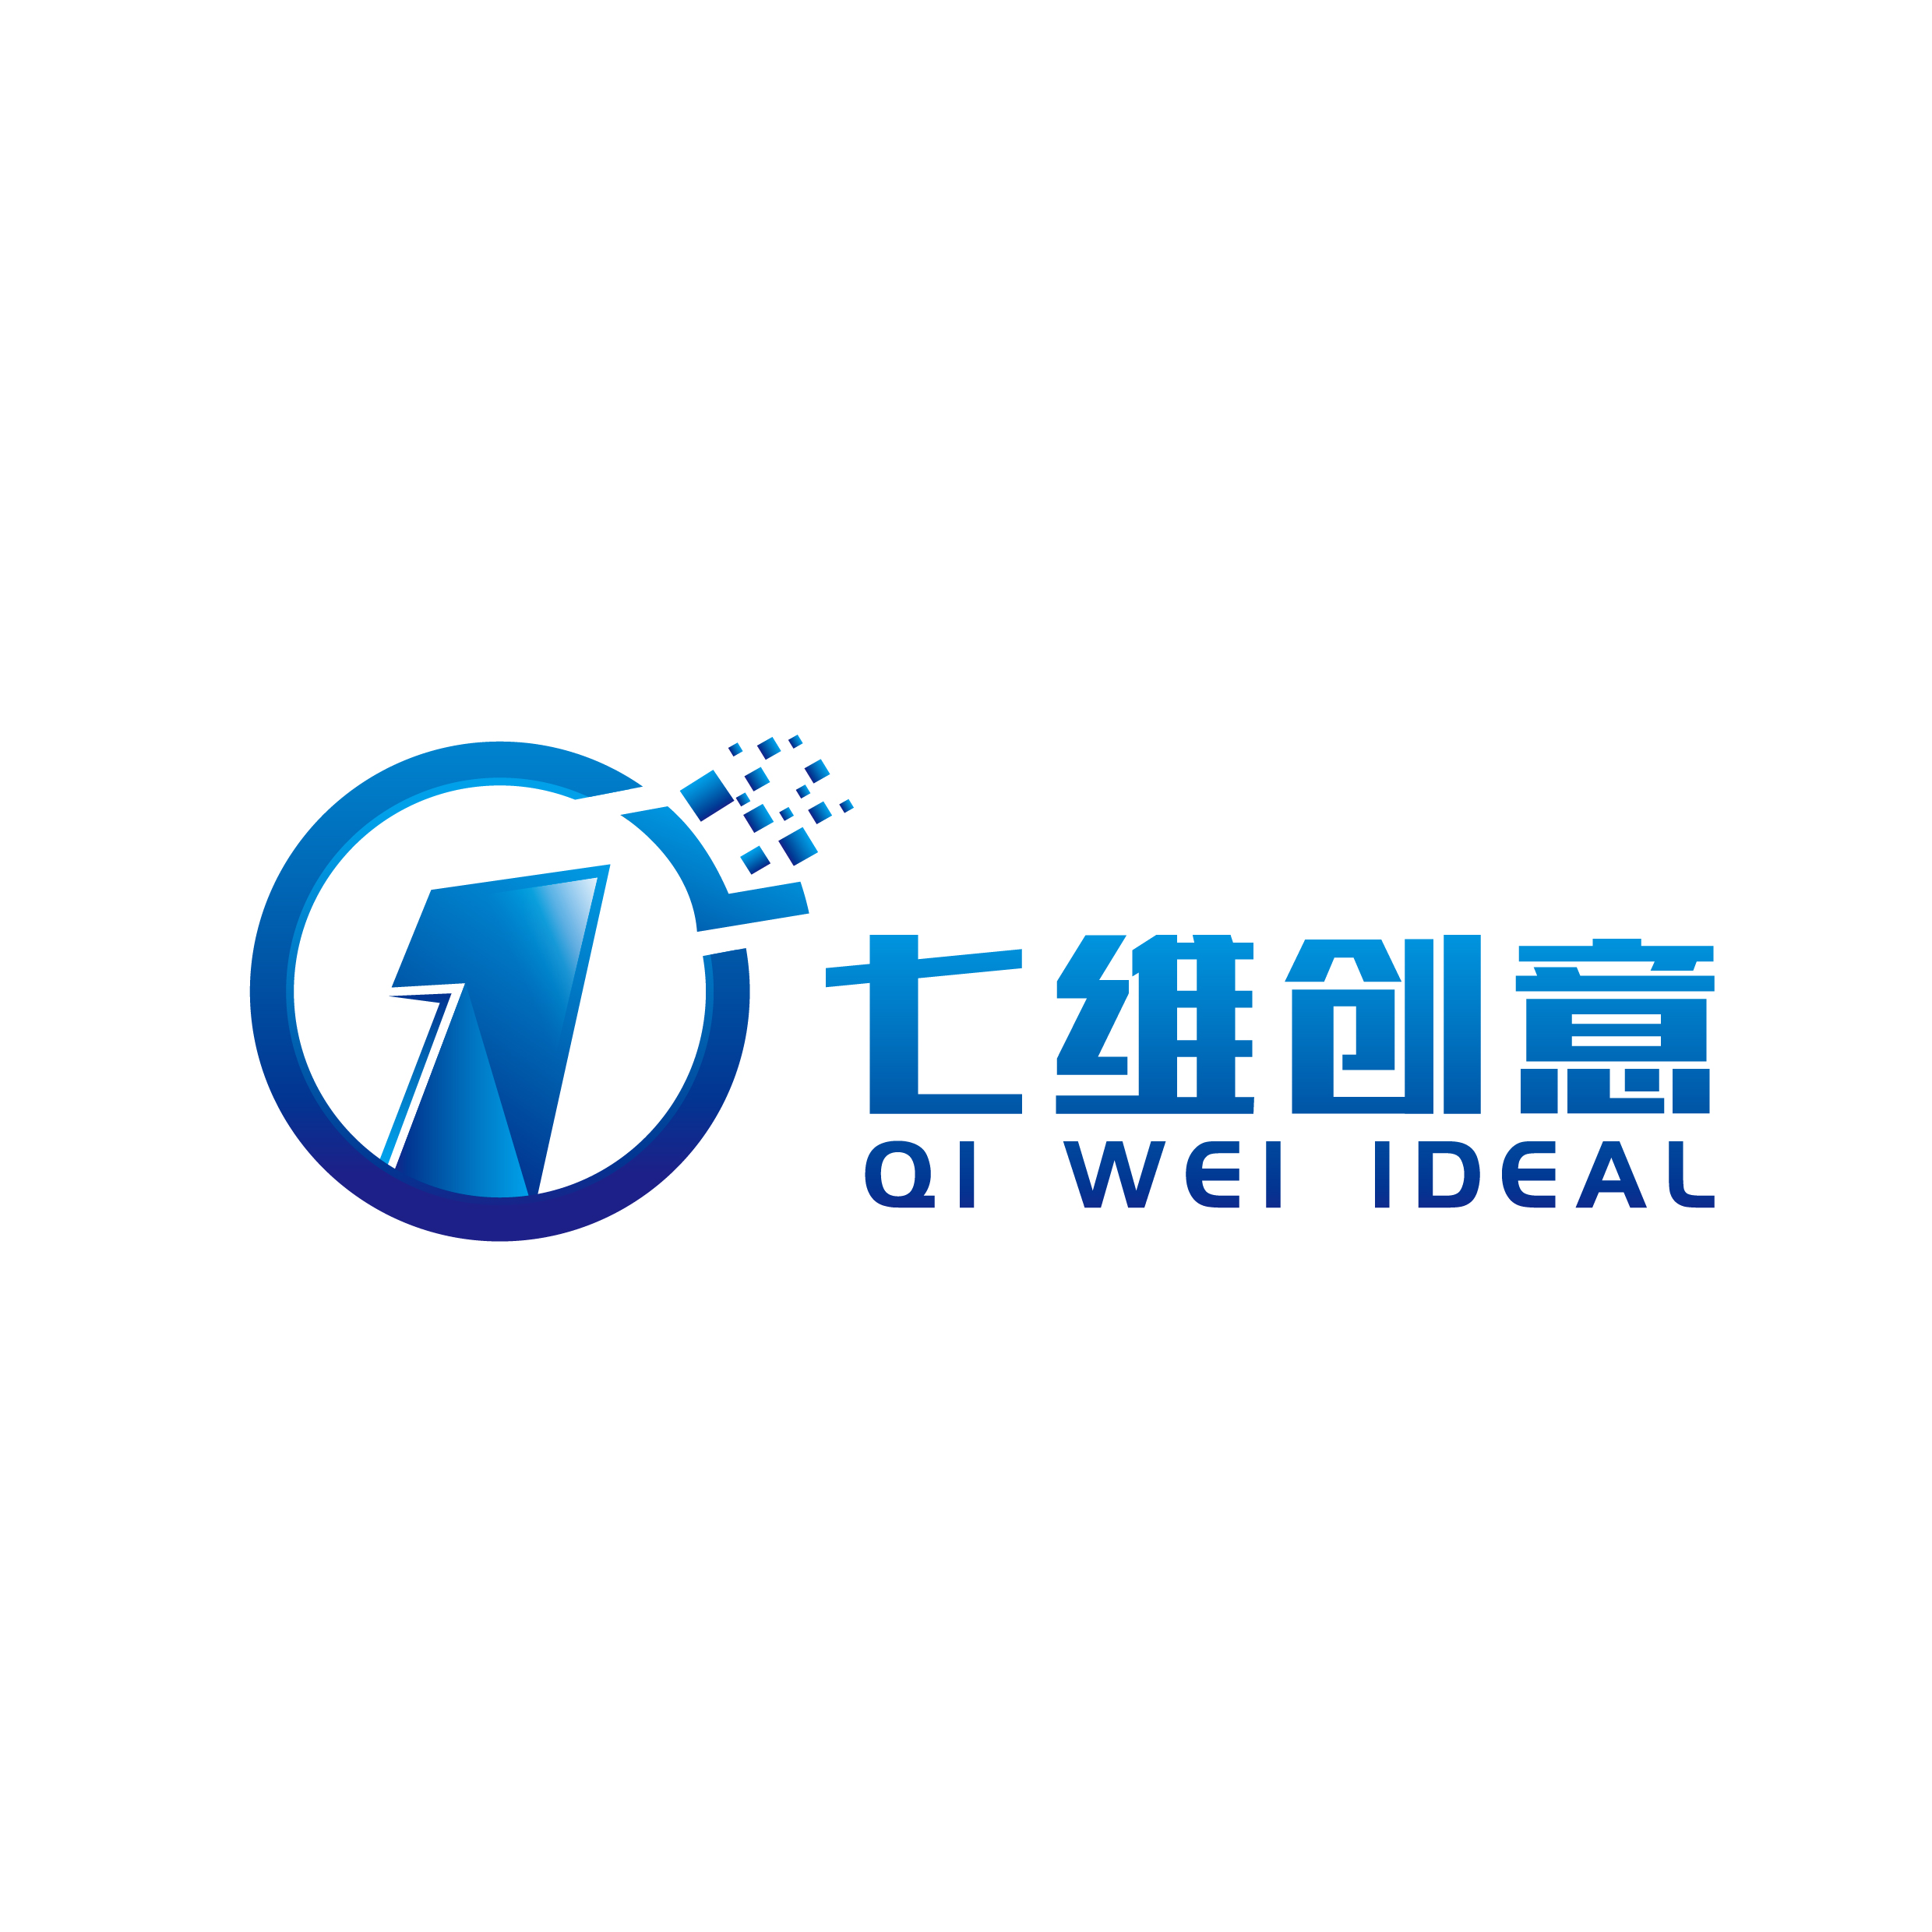 武汉七维创意网络科技有限公司